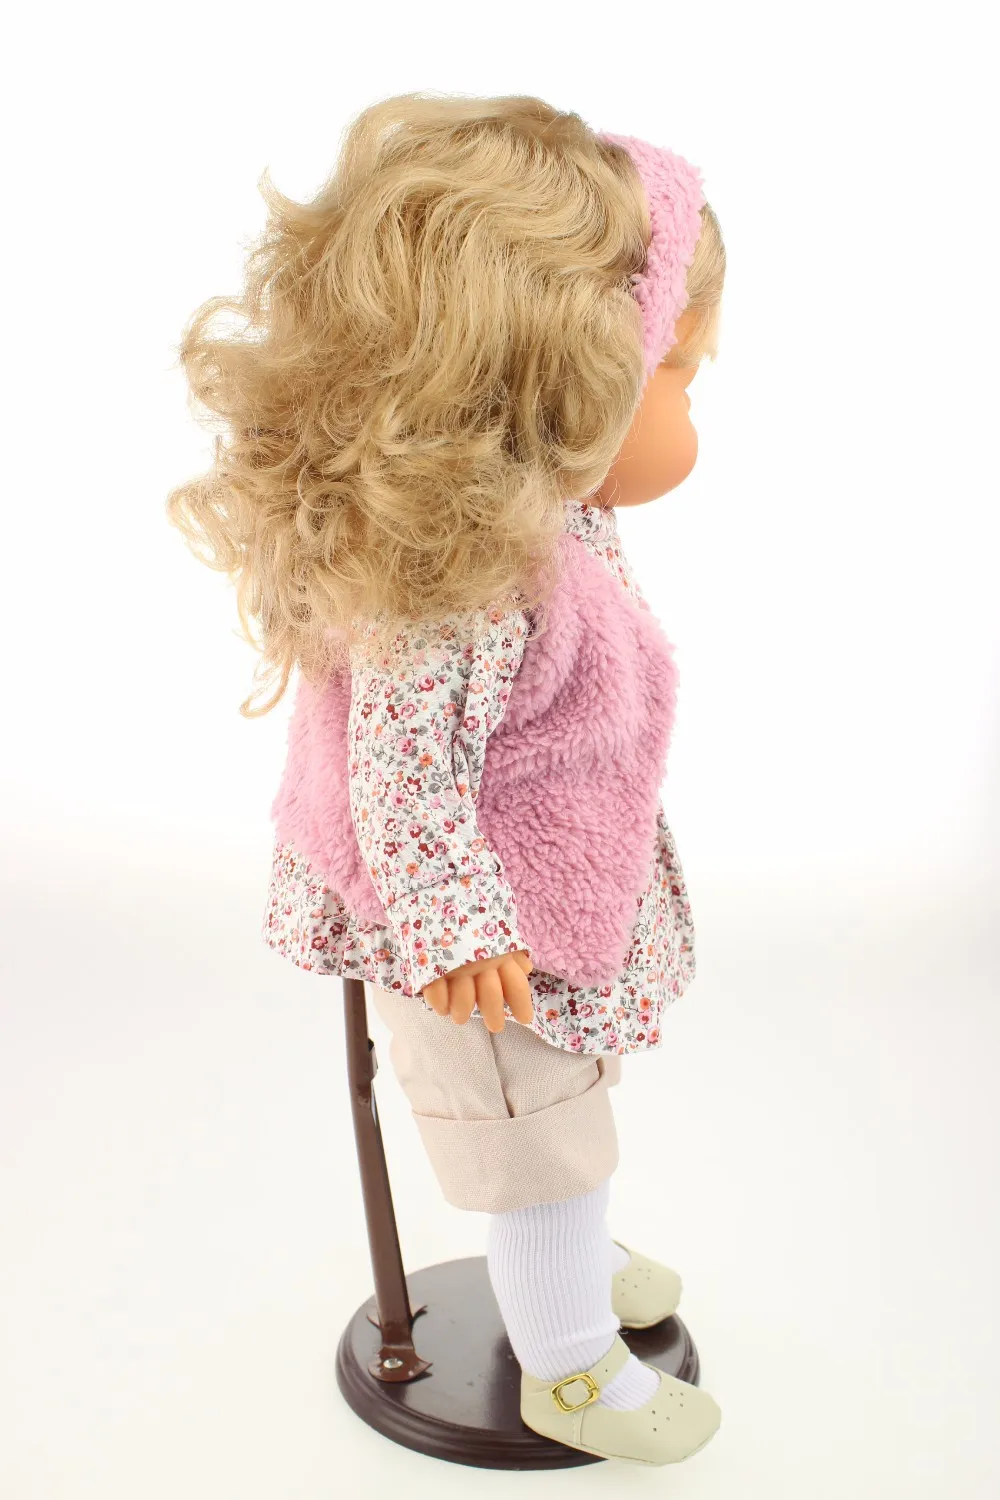 18 дюймов reborn baby doll укоренились волокна волос реалистичные живые куклы ткань тела игрушки для детей